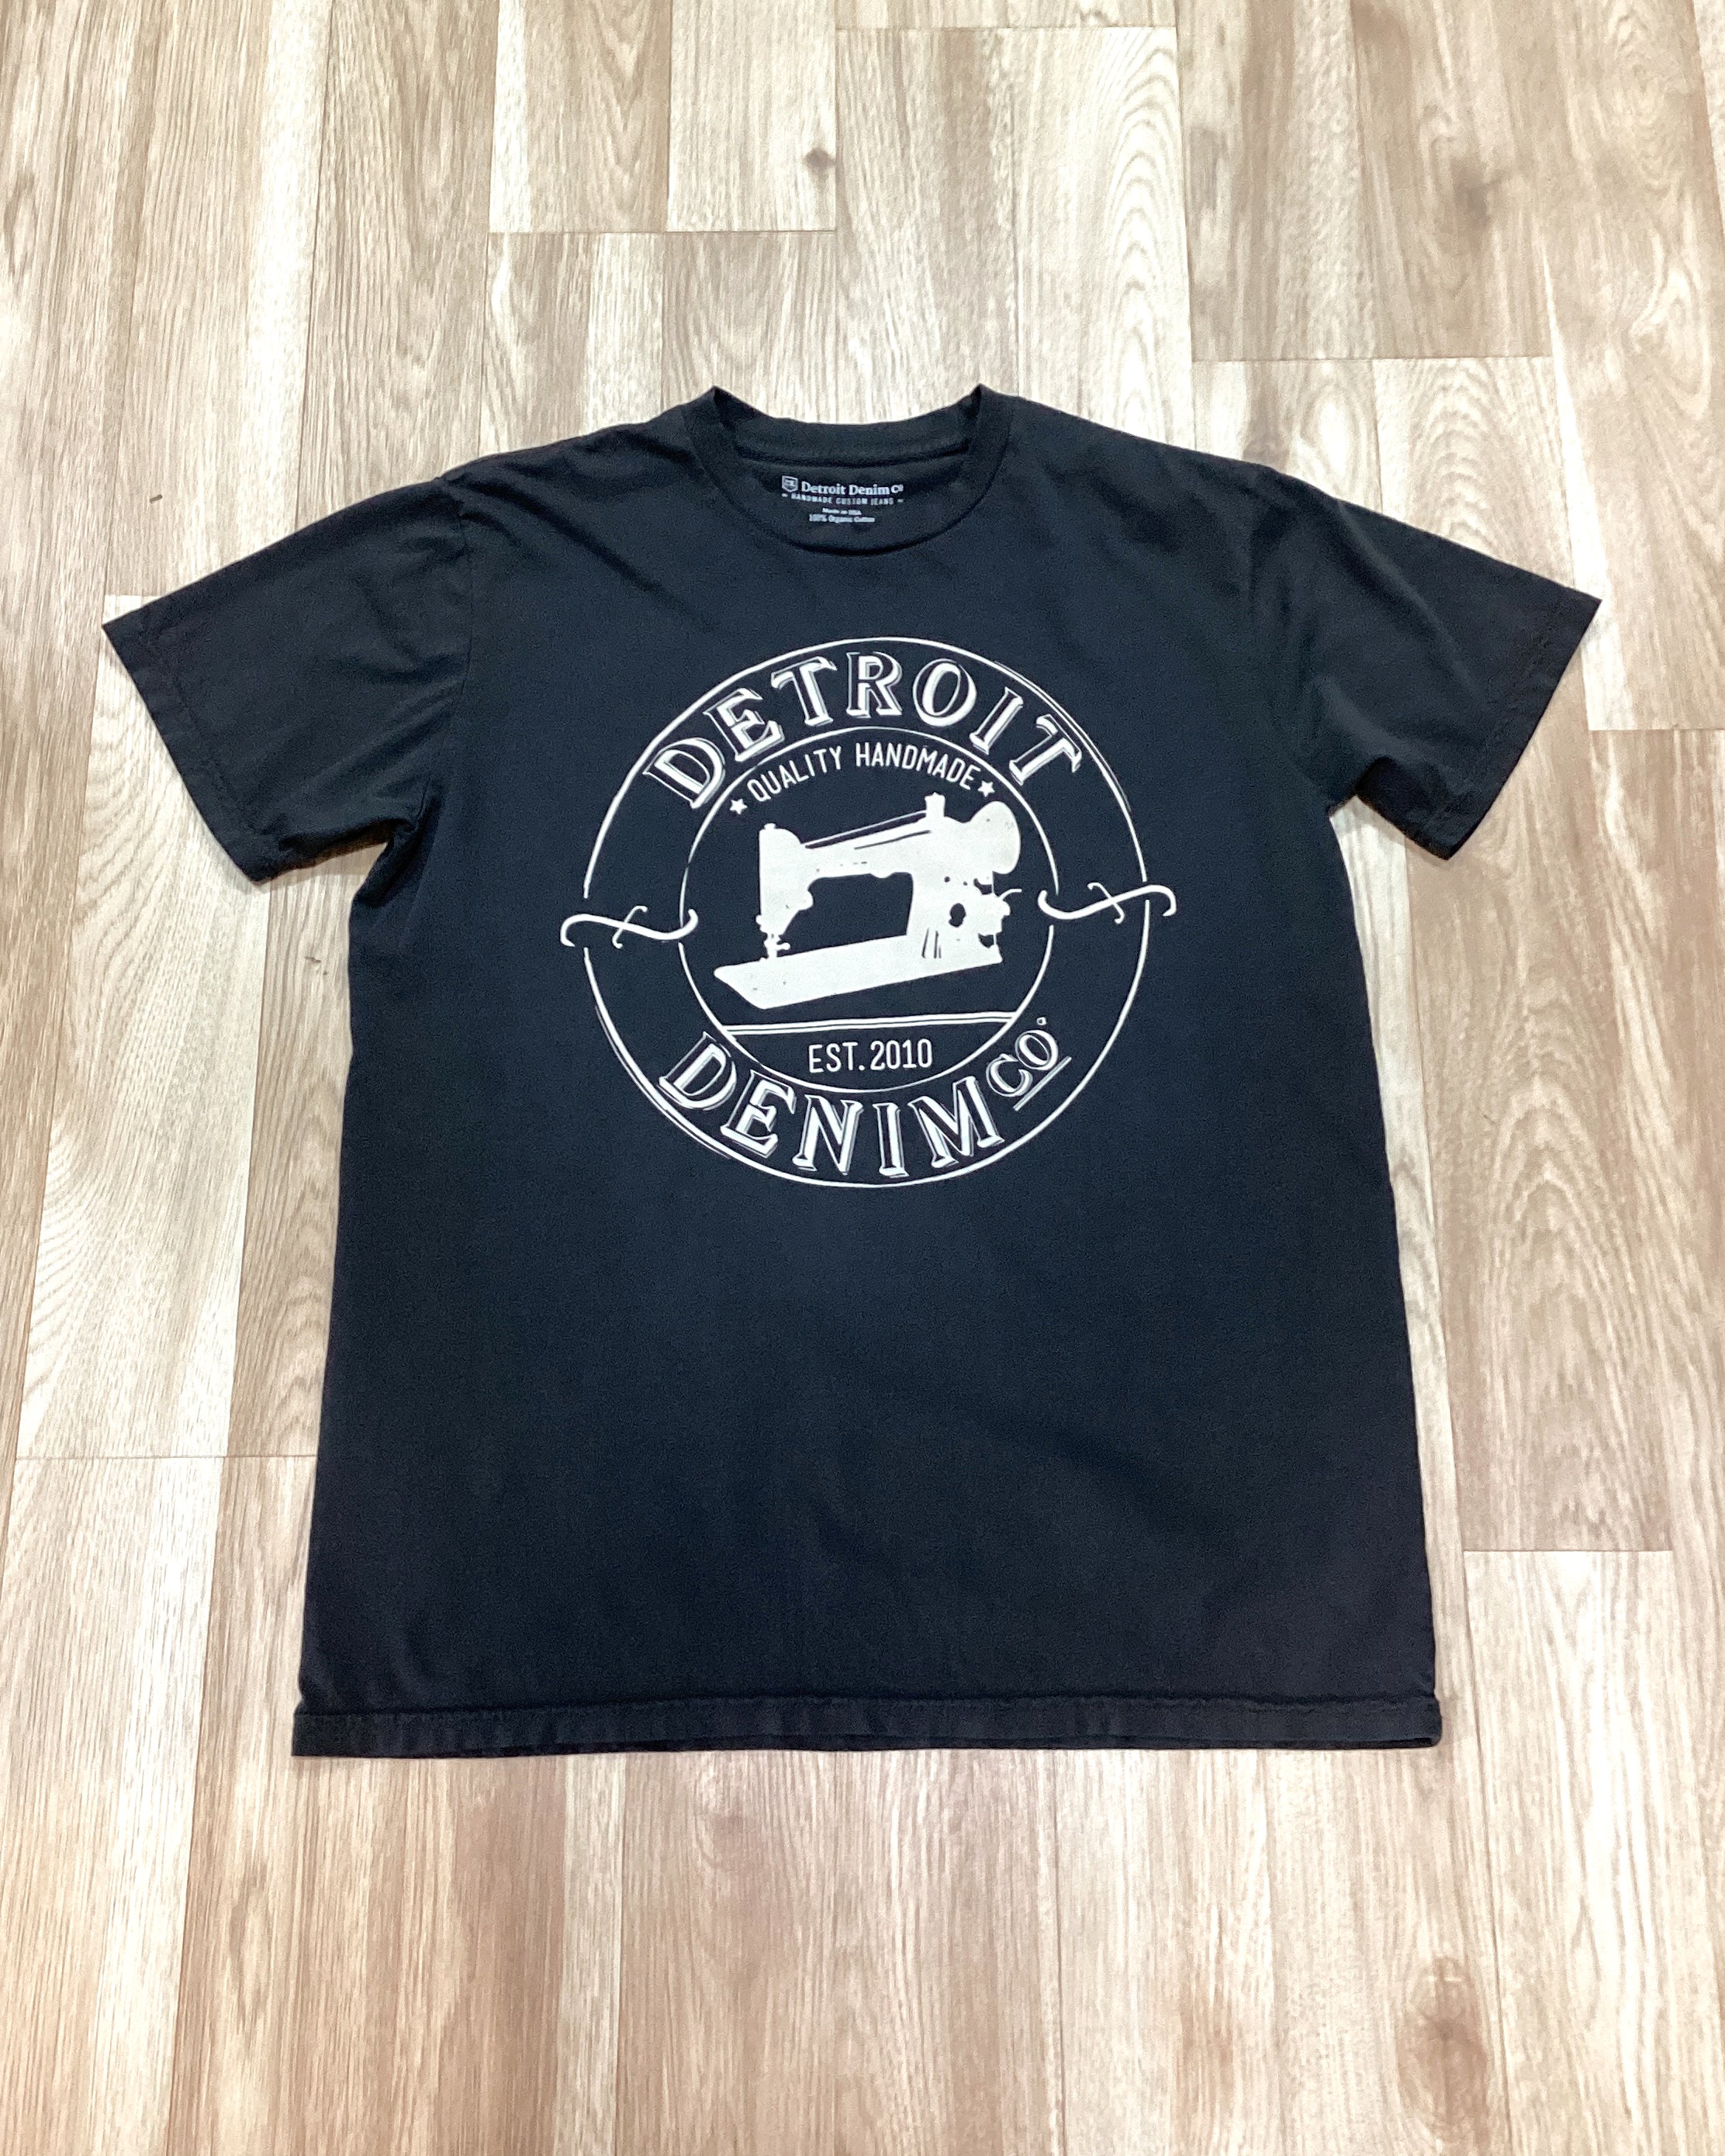 Detroit Denim Vintage t-shirt – Detroit Denim Co.